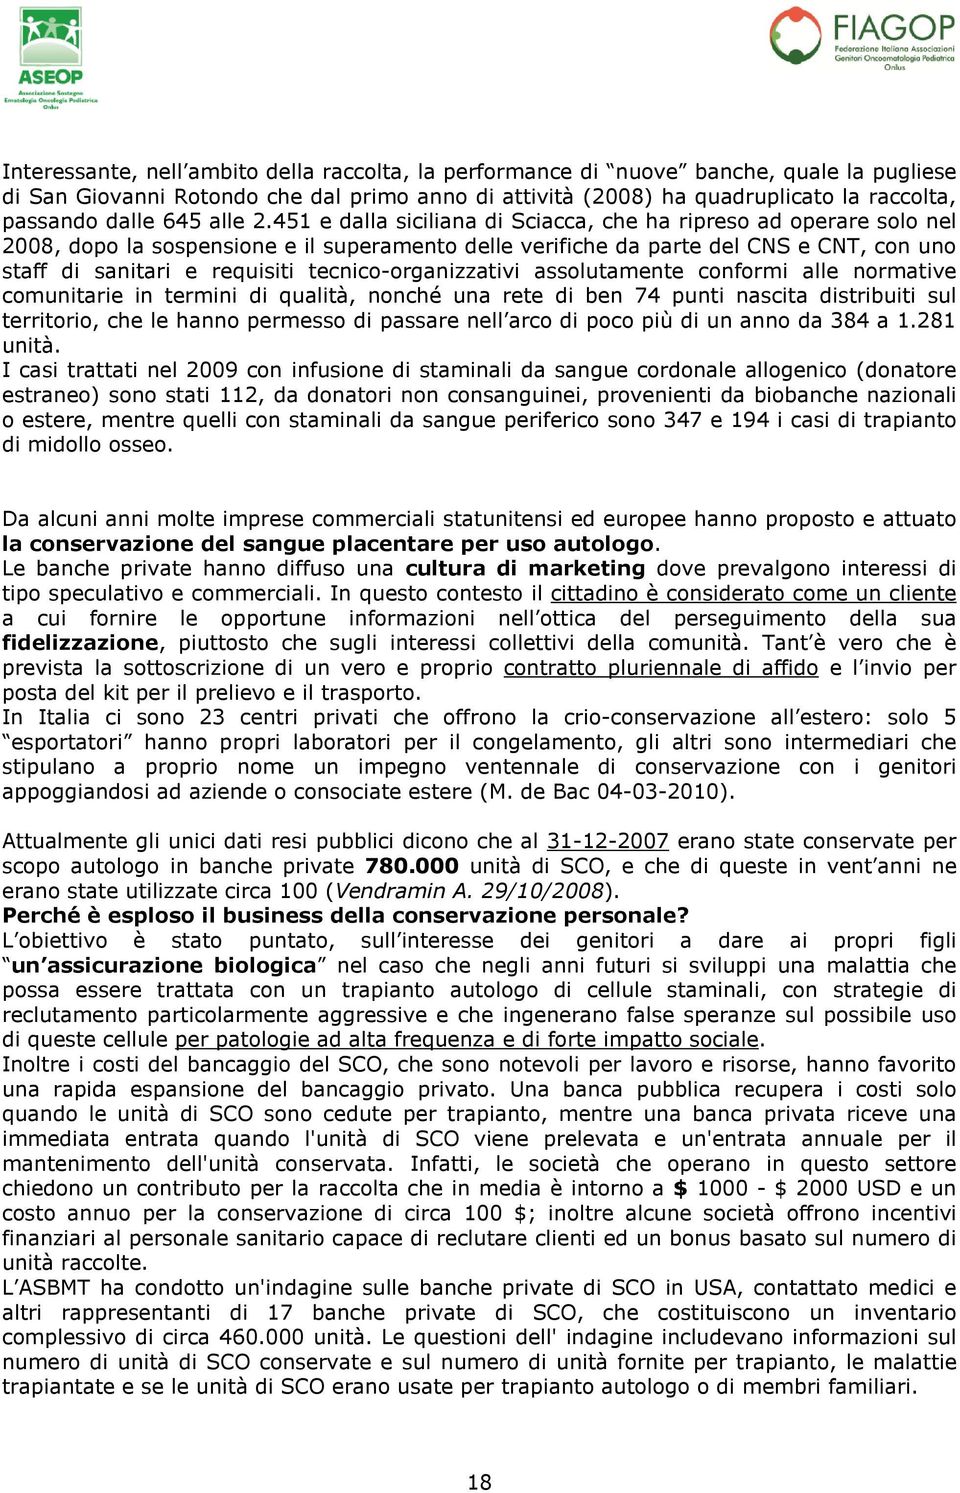 451 e dalla siciliana di Sciacca, che ha ripreso ad operare solo nel 2008, dopo la sospensione e il superamento delle verifiche da parte del CNS e CNT, con uno staff di sanitari e requisiti